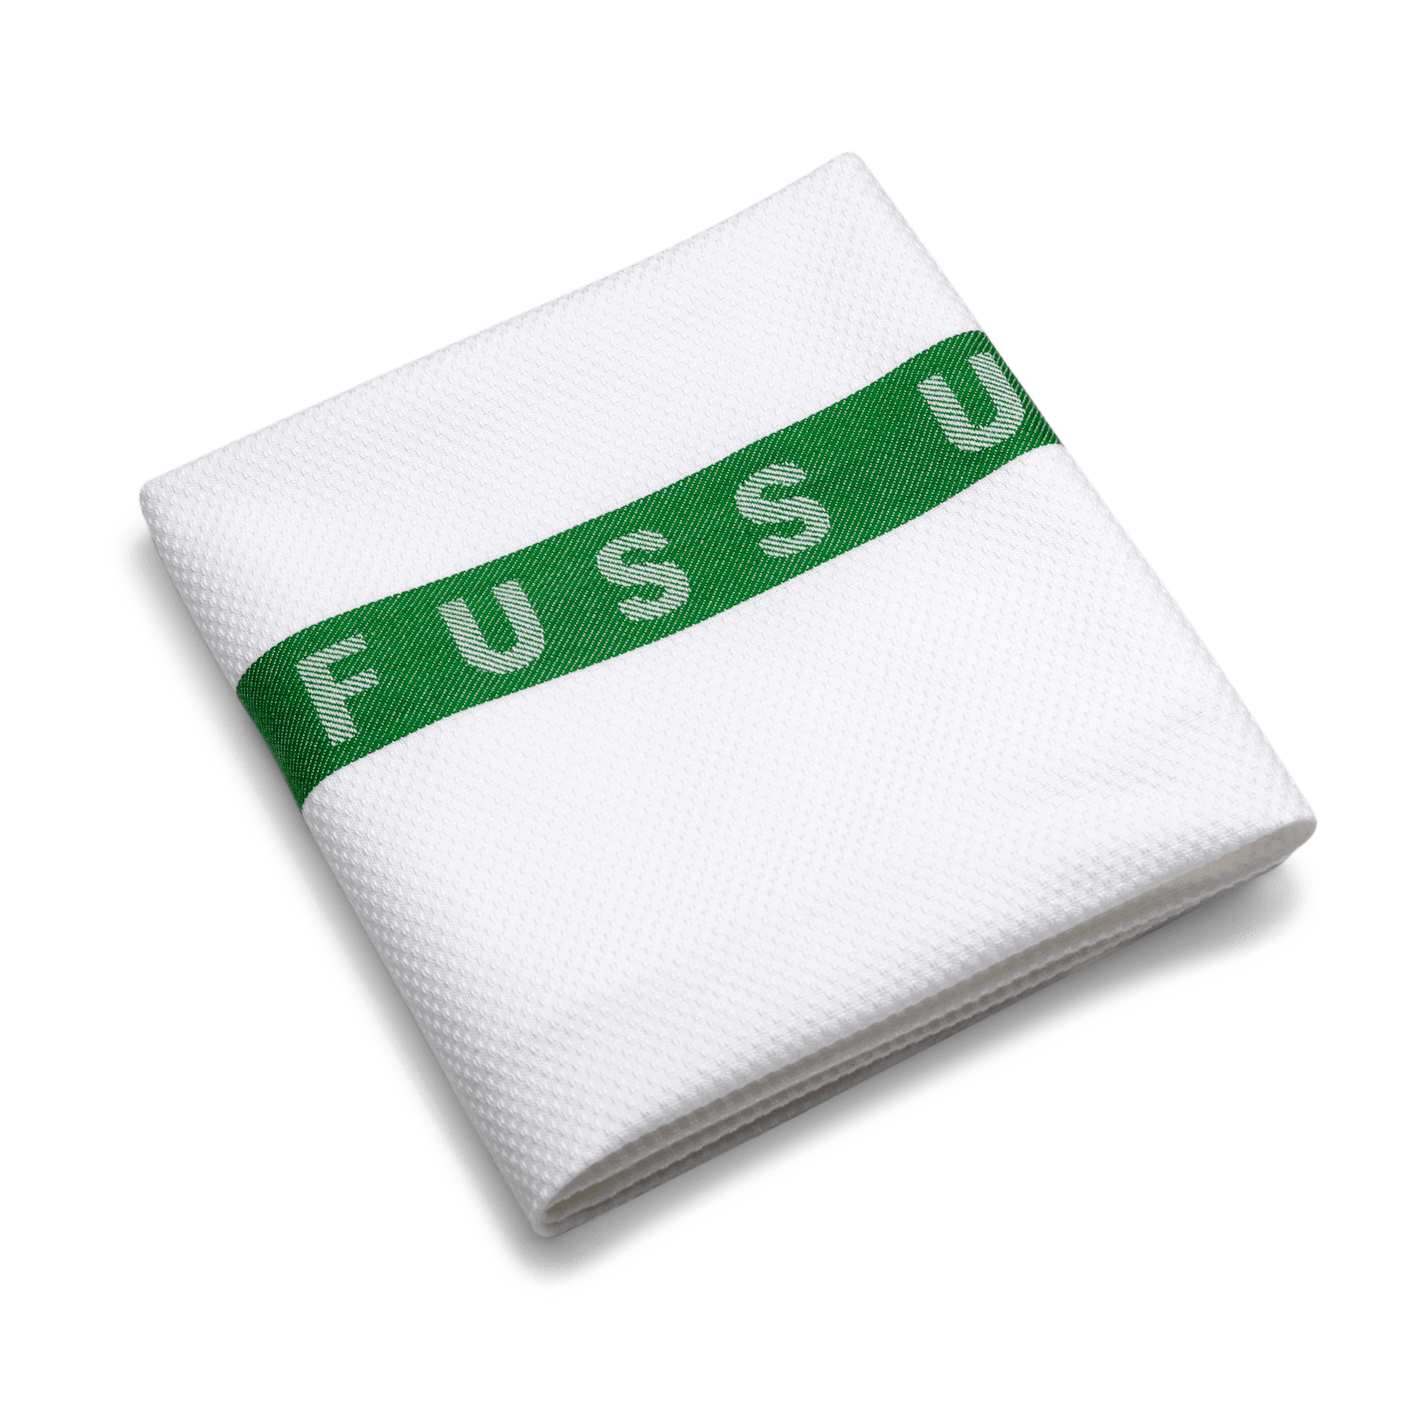 RUCK - Fußtuch mit Einwebung "FÜR FUSS UND PFLEGE" in grün